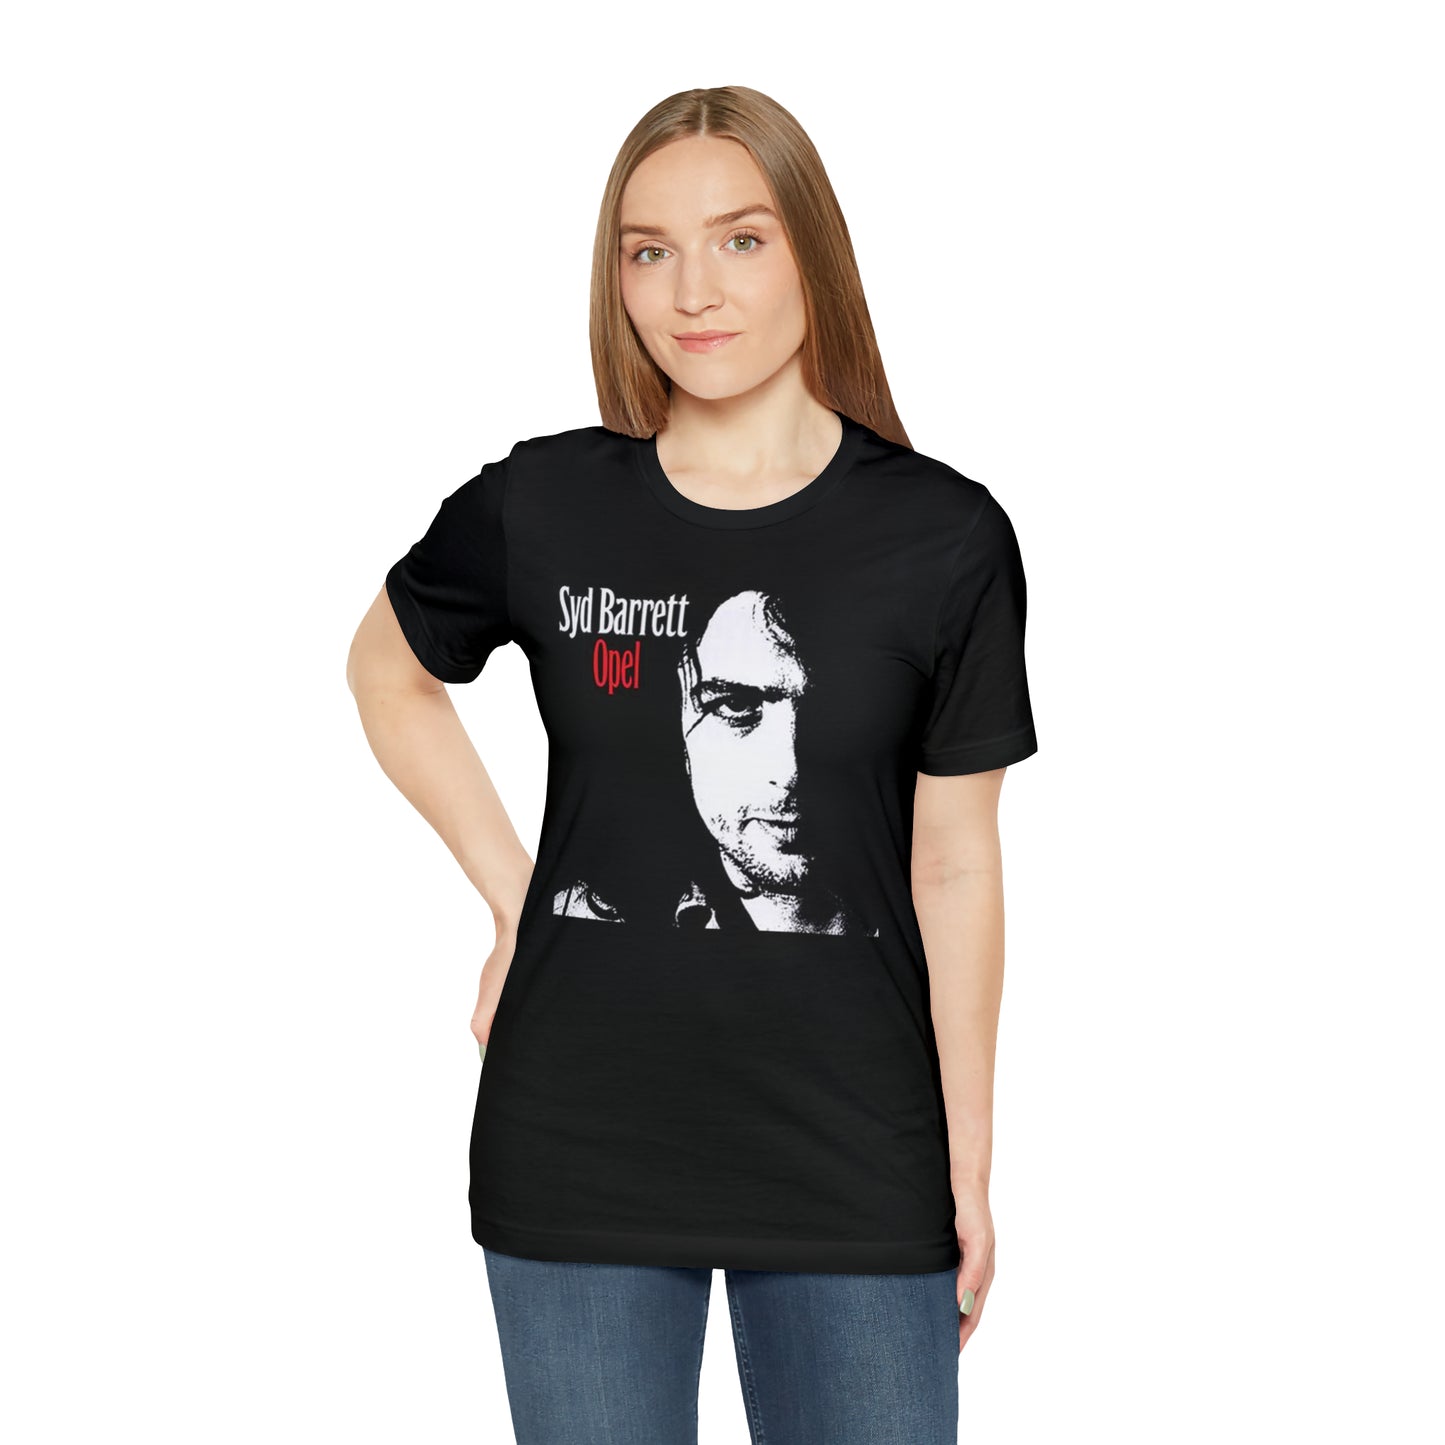 Syd Barrett Shirt